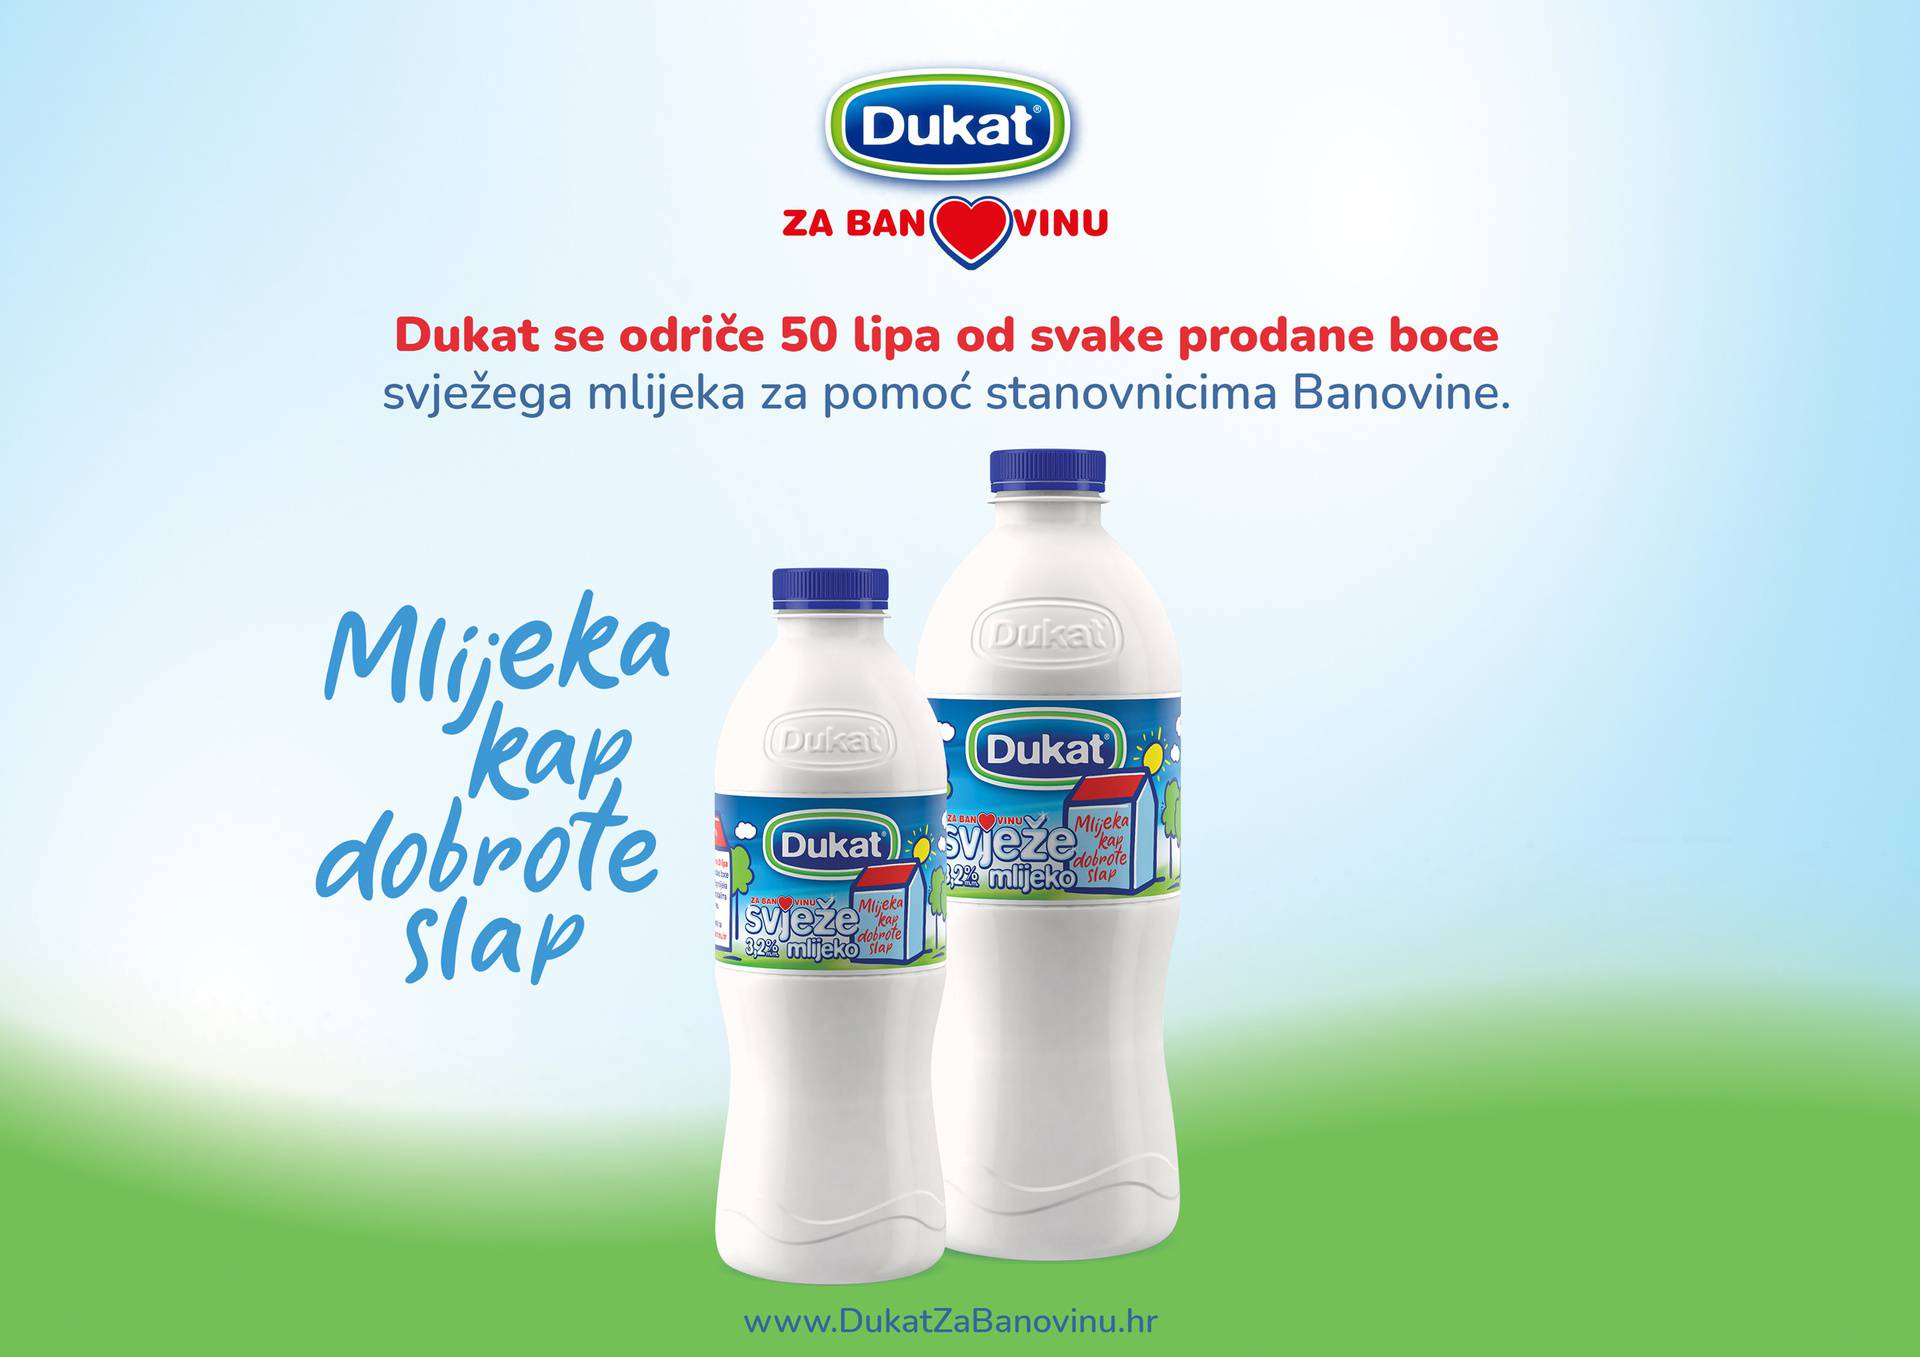 Dukat se odriče 50 lipa od svake prodane boce svježeg mlijeka za pomoć stanovnicima Banovine